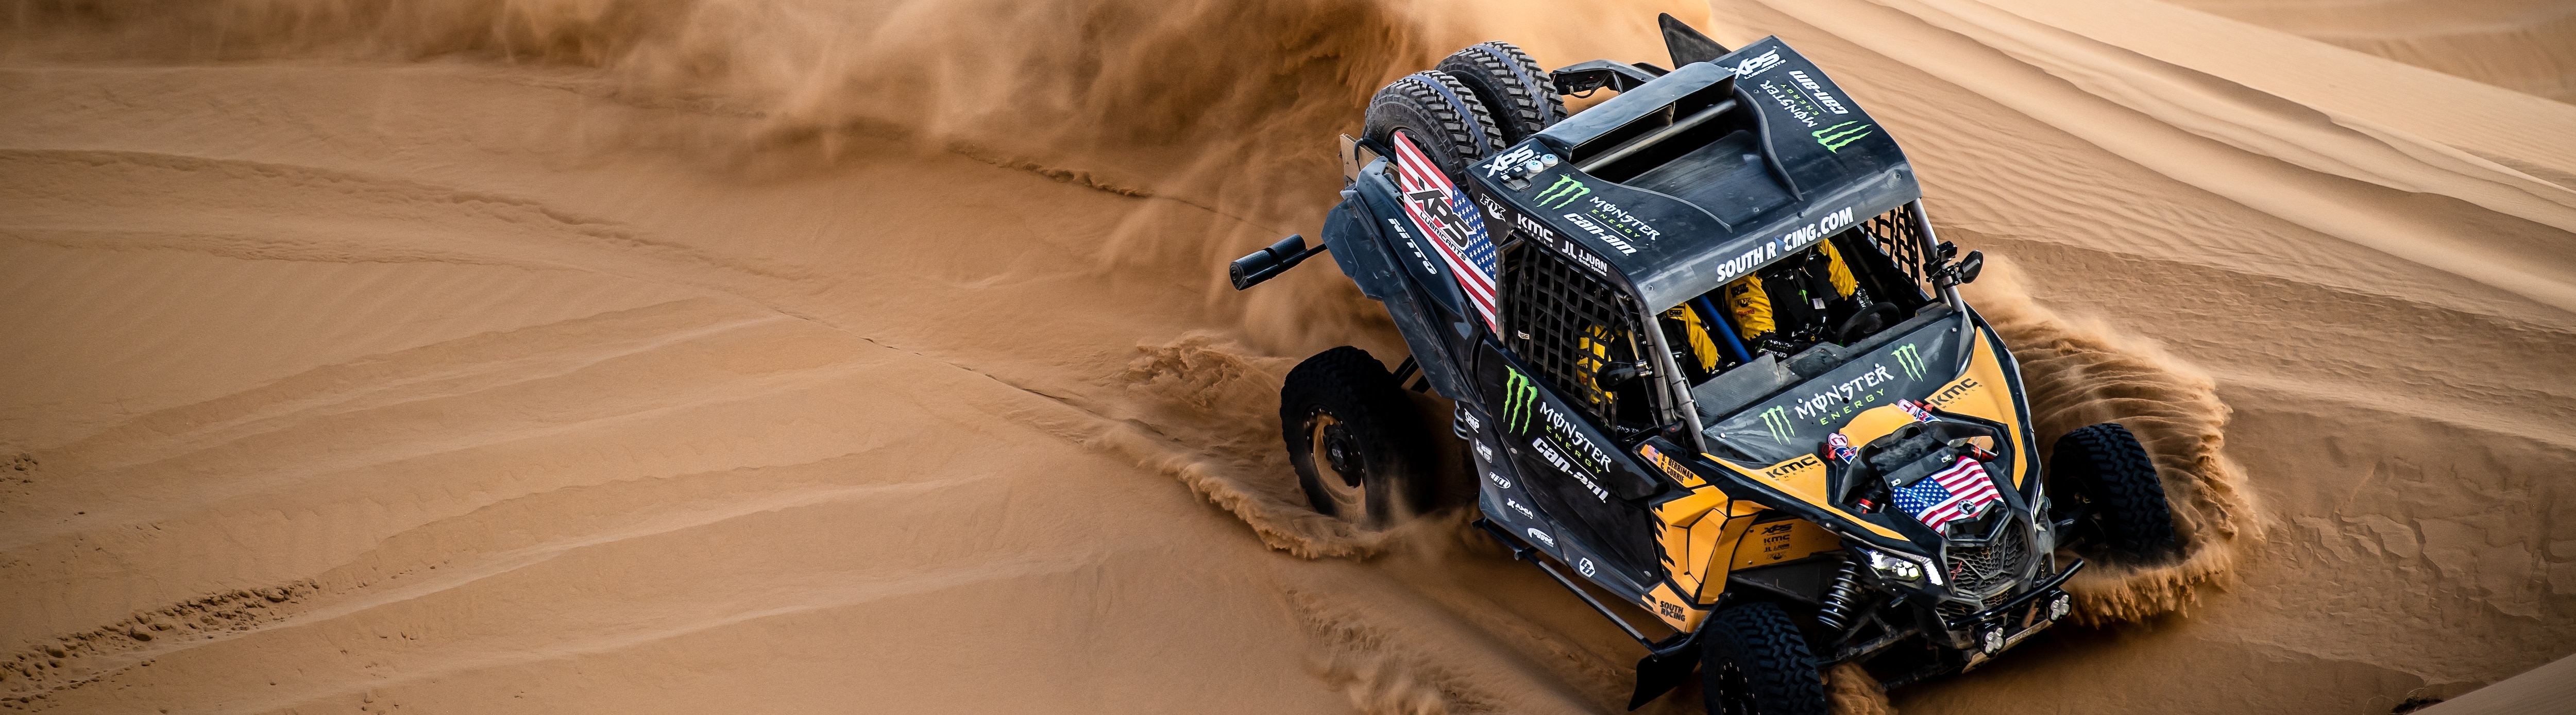 Can-Am Side-By-Side Dakar 2020 in der Wüste durch Saudi-Arabien